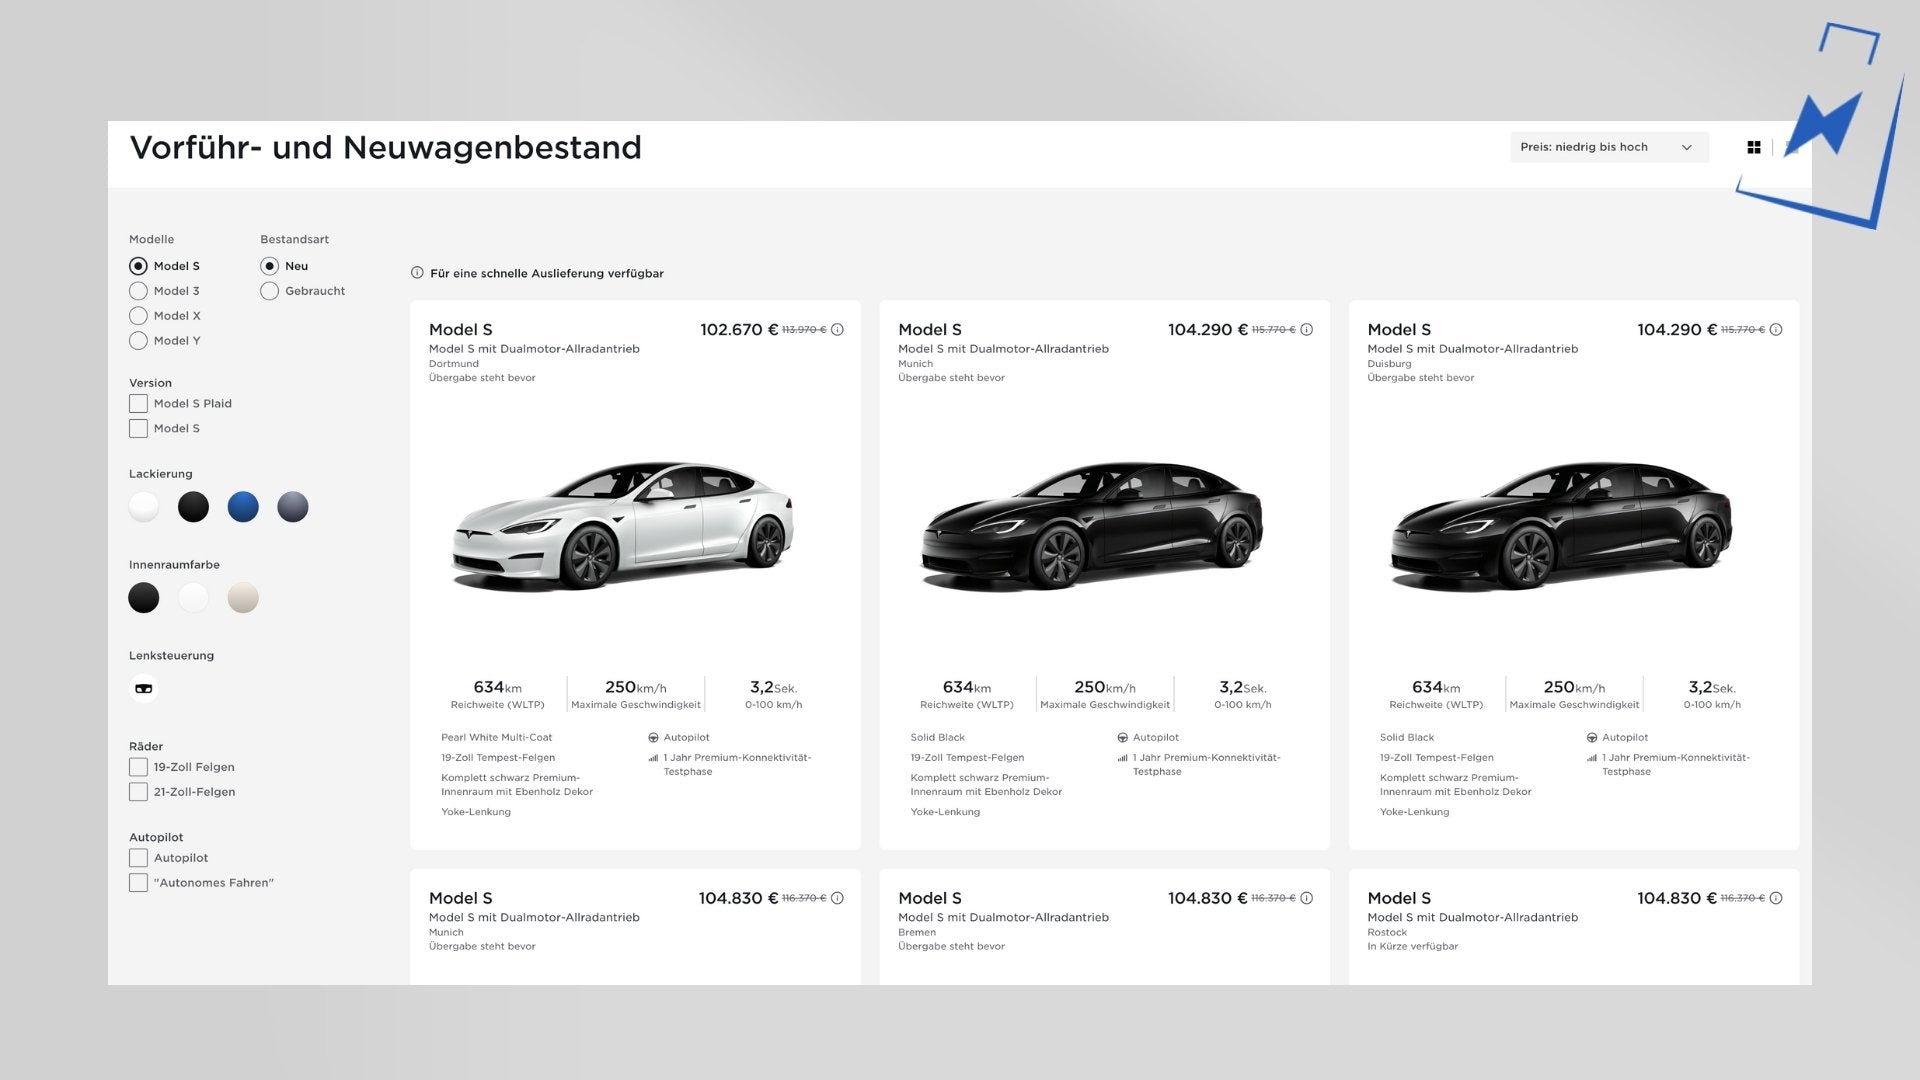 Model S und Model X Bestand verfügbar, Rabatte bis zu 15.000€ möglich! - Shop4Tesla